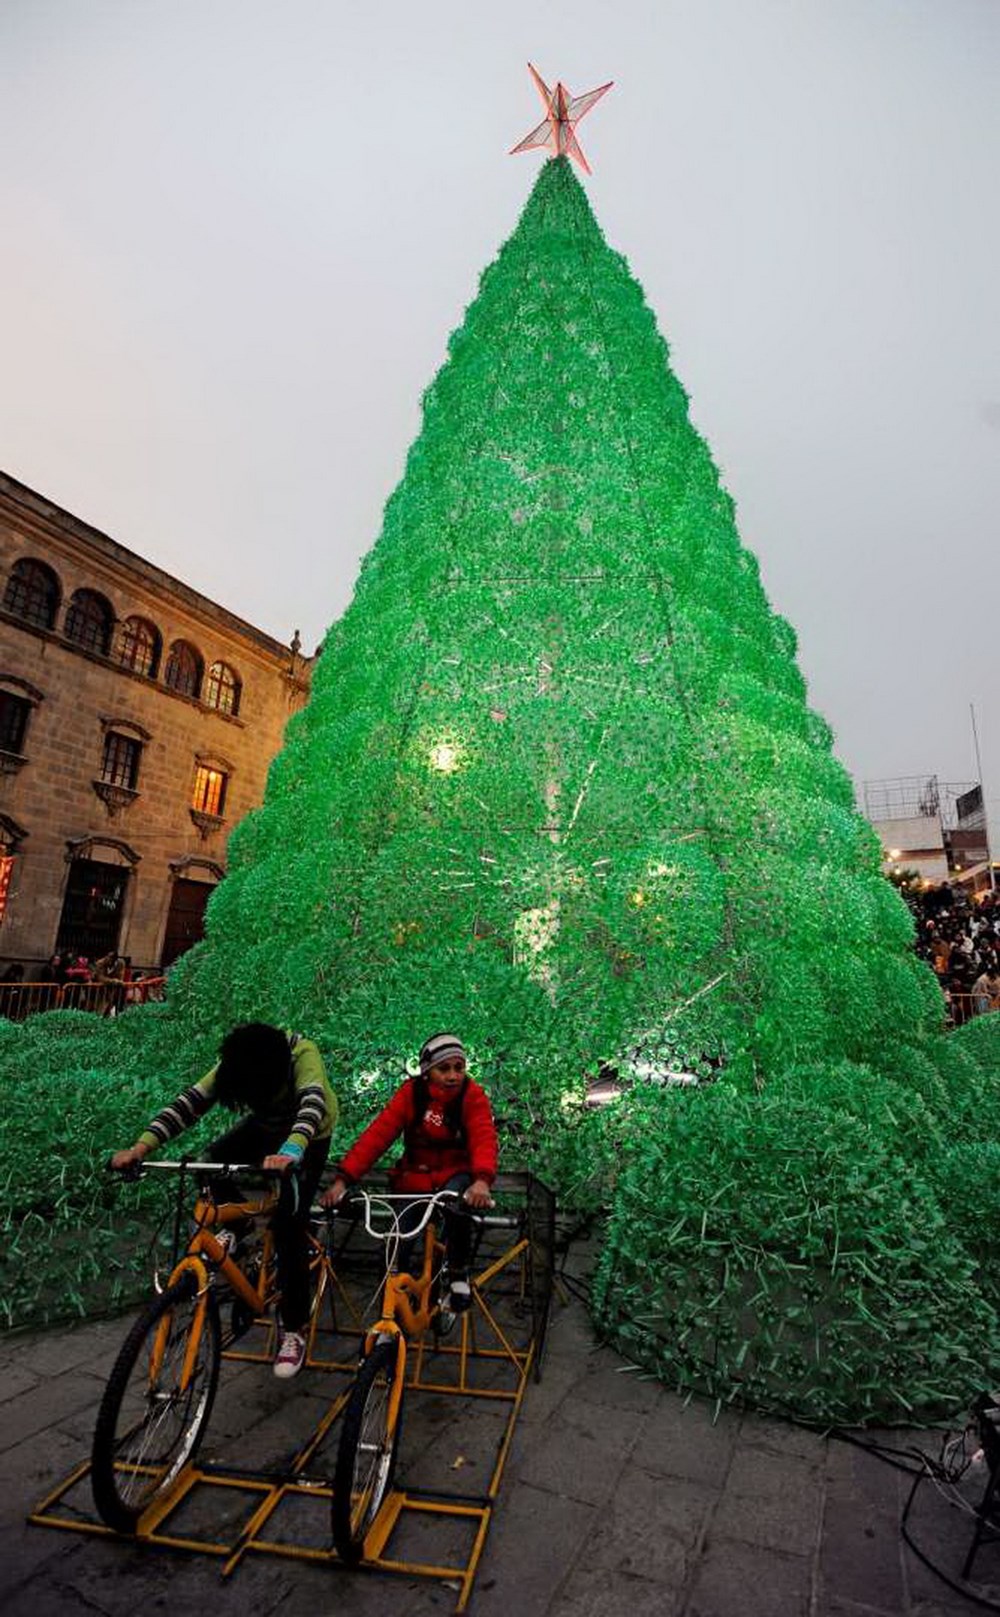 Cây thông cao 14m được làm từ 50.000 chai nhựa tại La Paz, Bolivia (Ảnh: Getty Images)